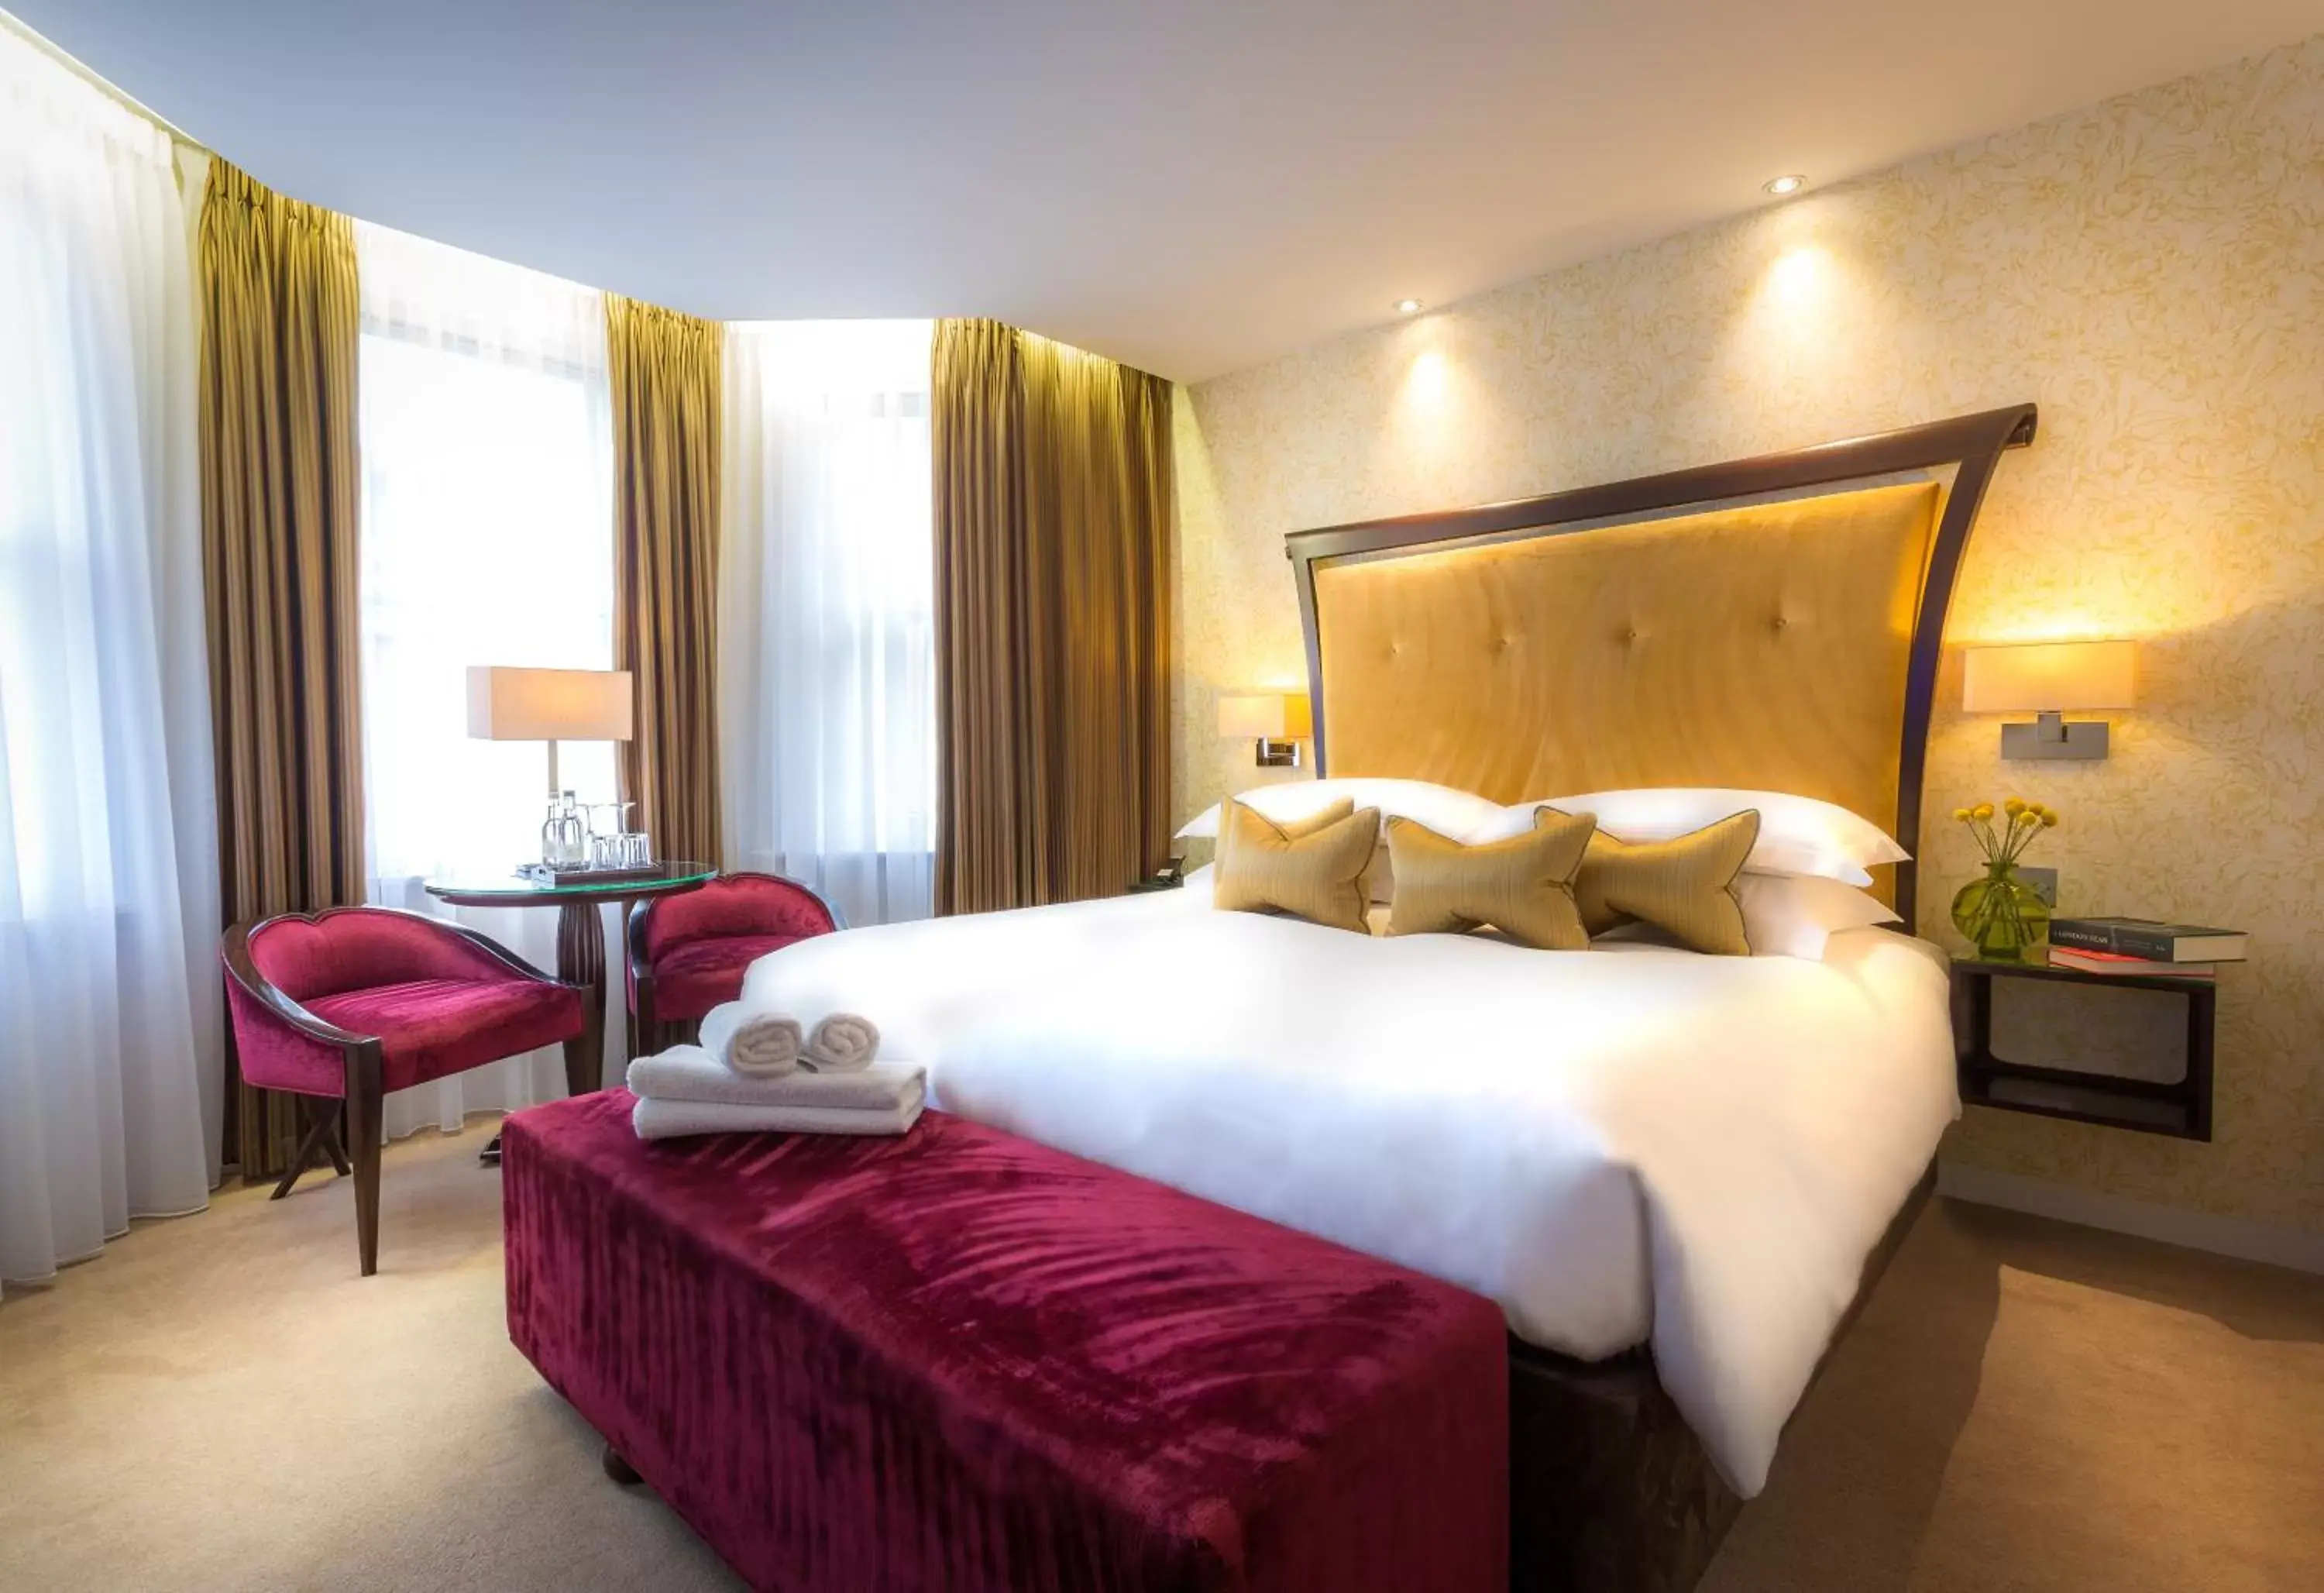 Bedroom, Bed in Ten Manchester Street Hotel